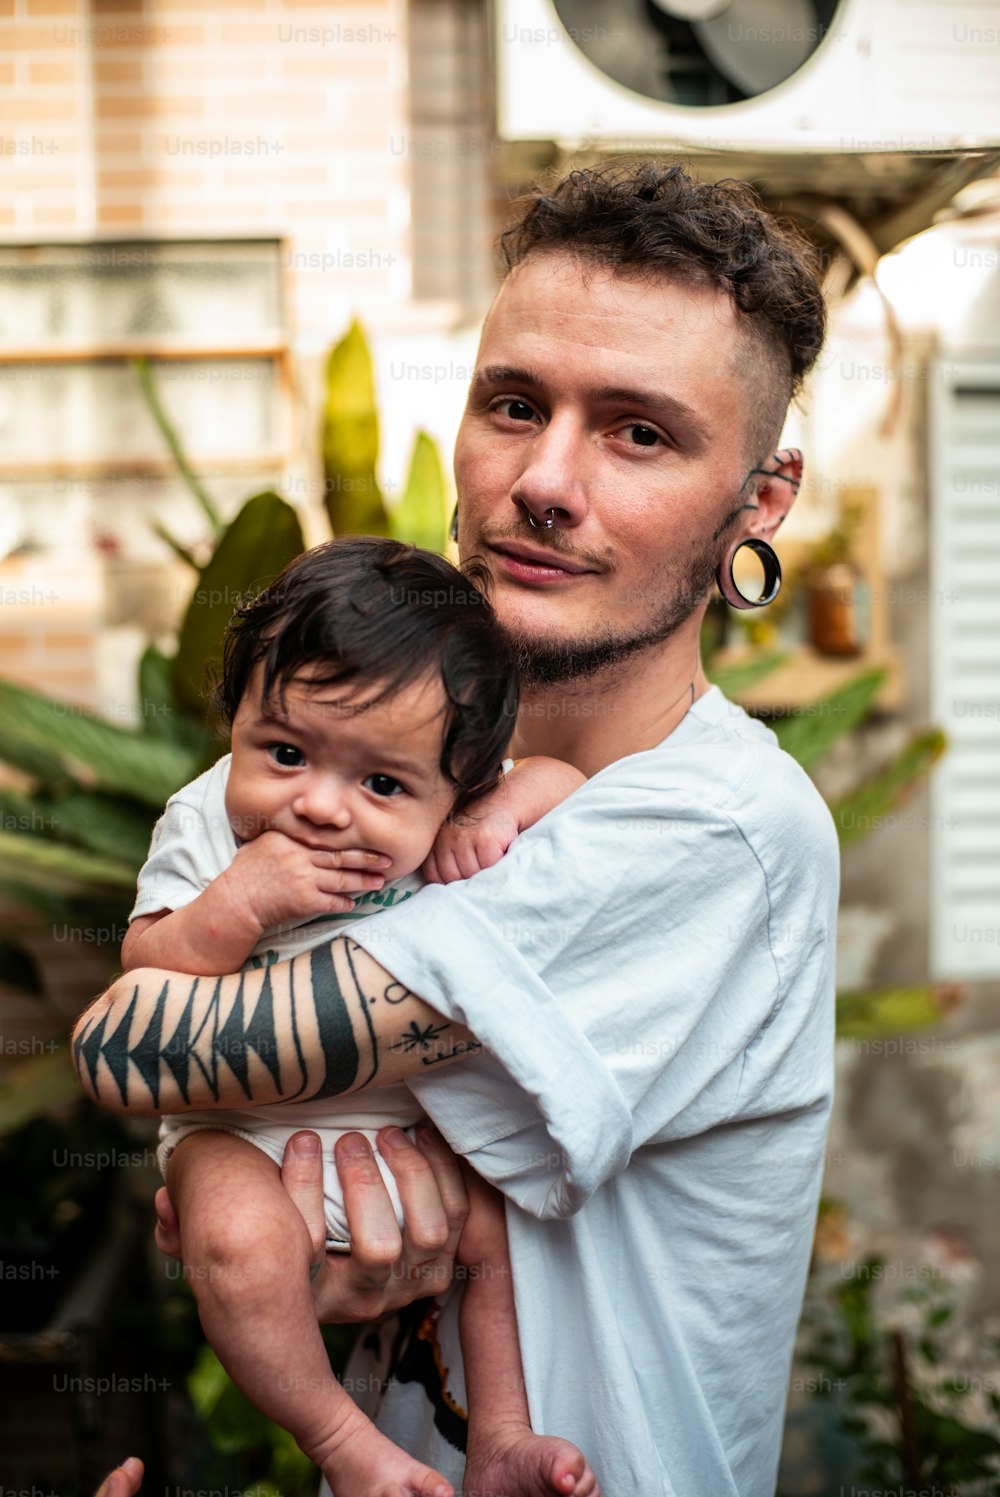 Un uomo che tiene in braccio un bambino con un tatuaggio di tigre sul braccio